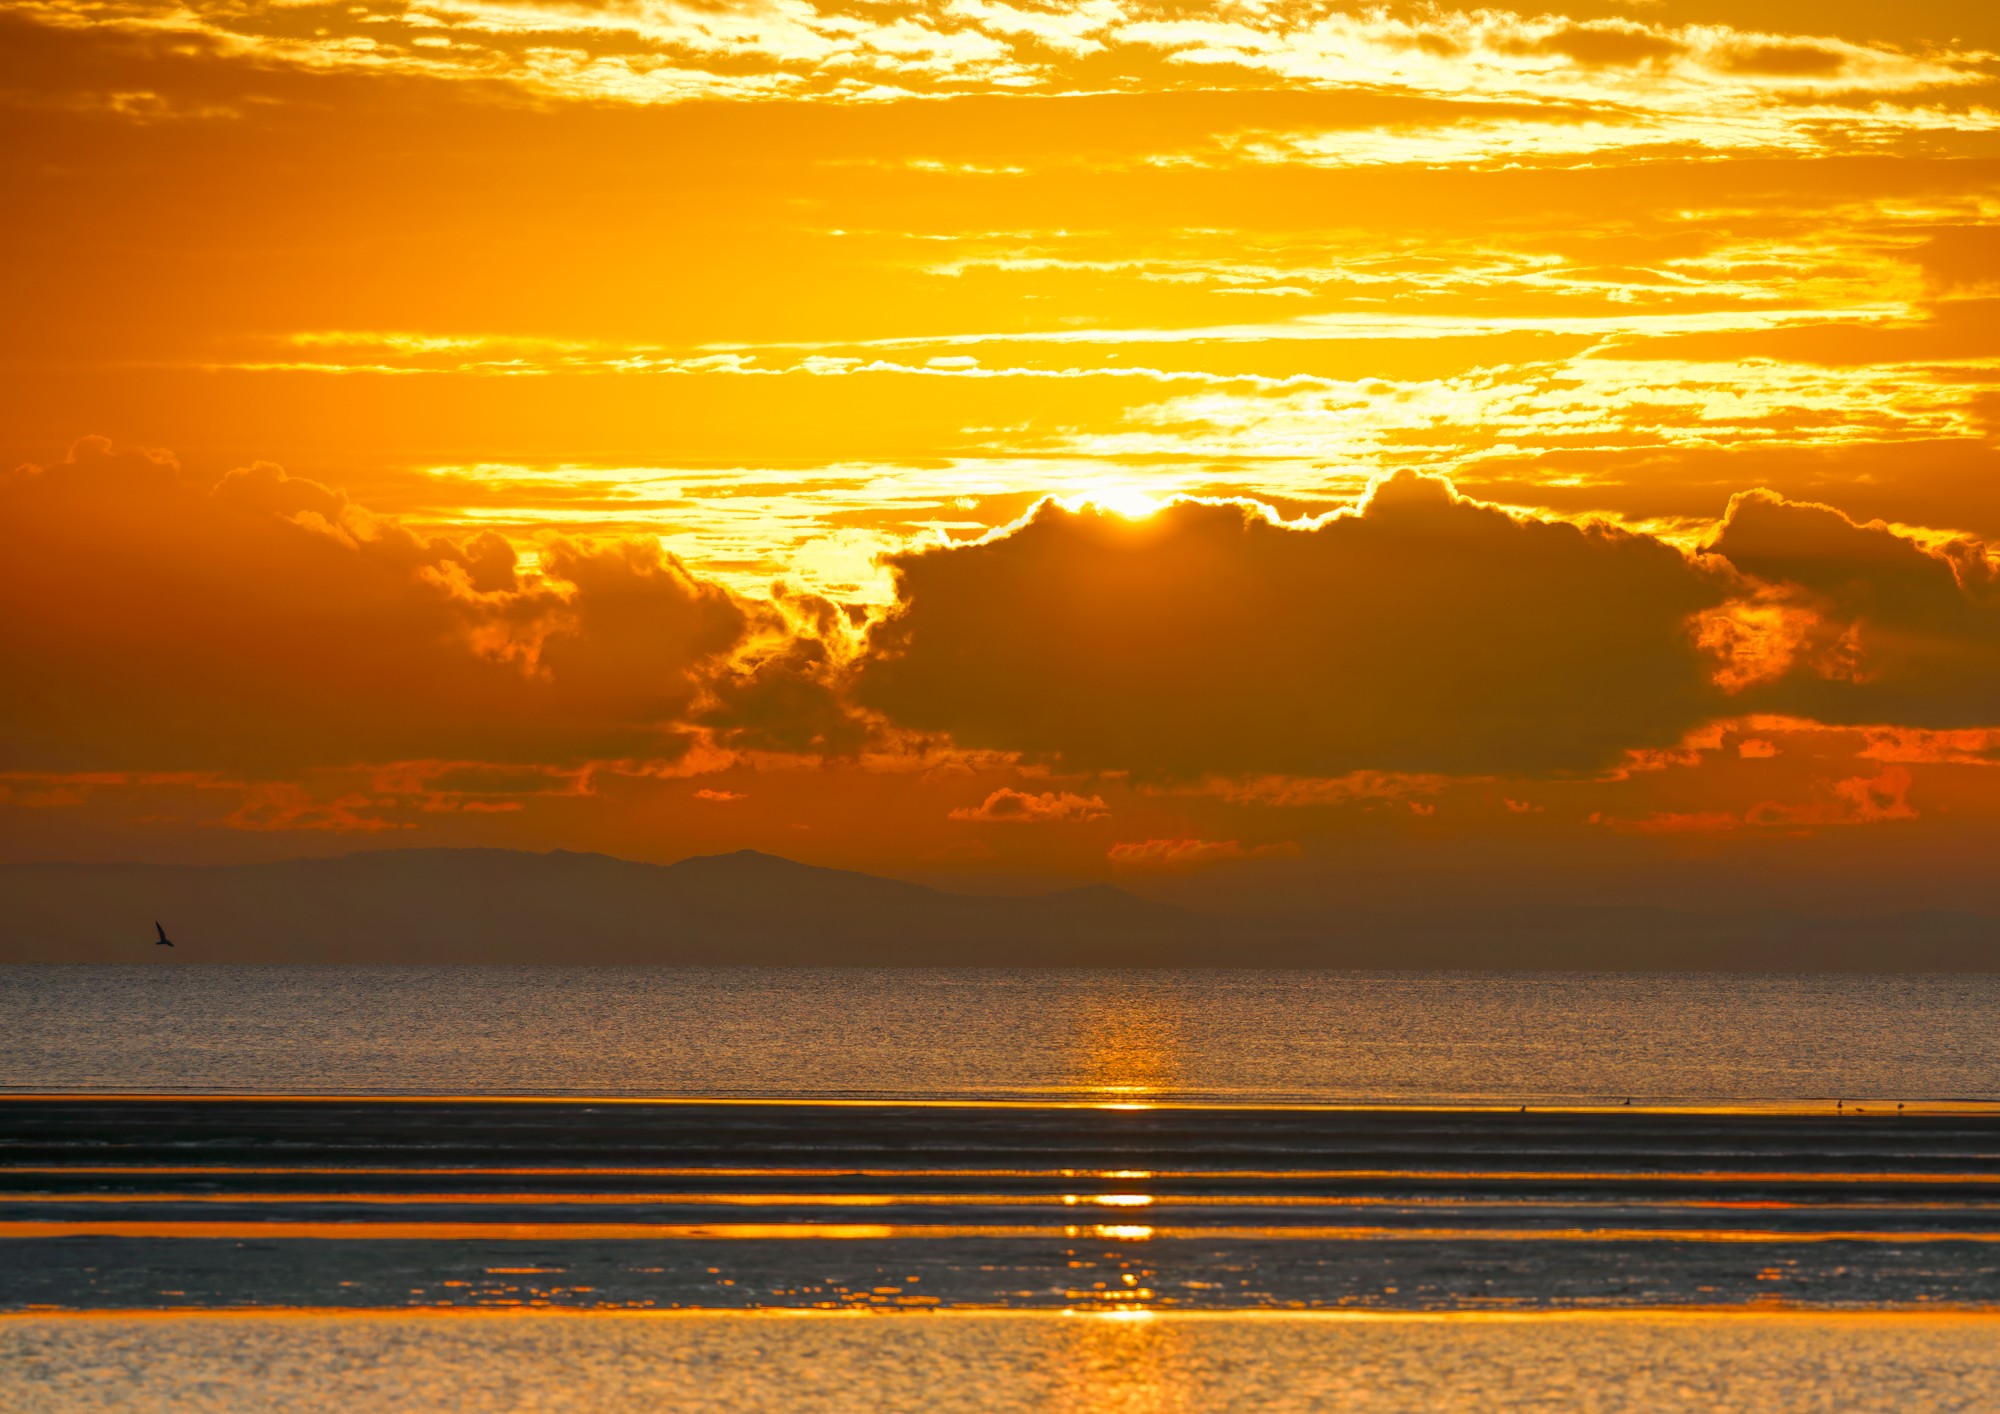 Sunrise over Moreton Bay, Queensland